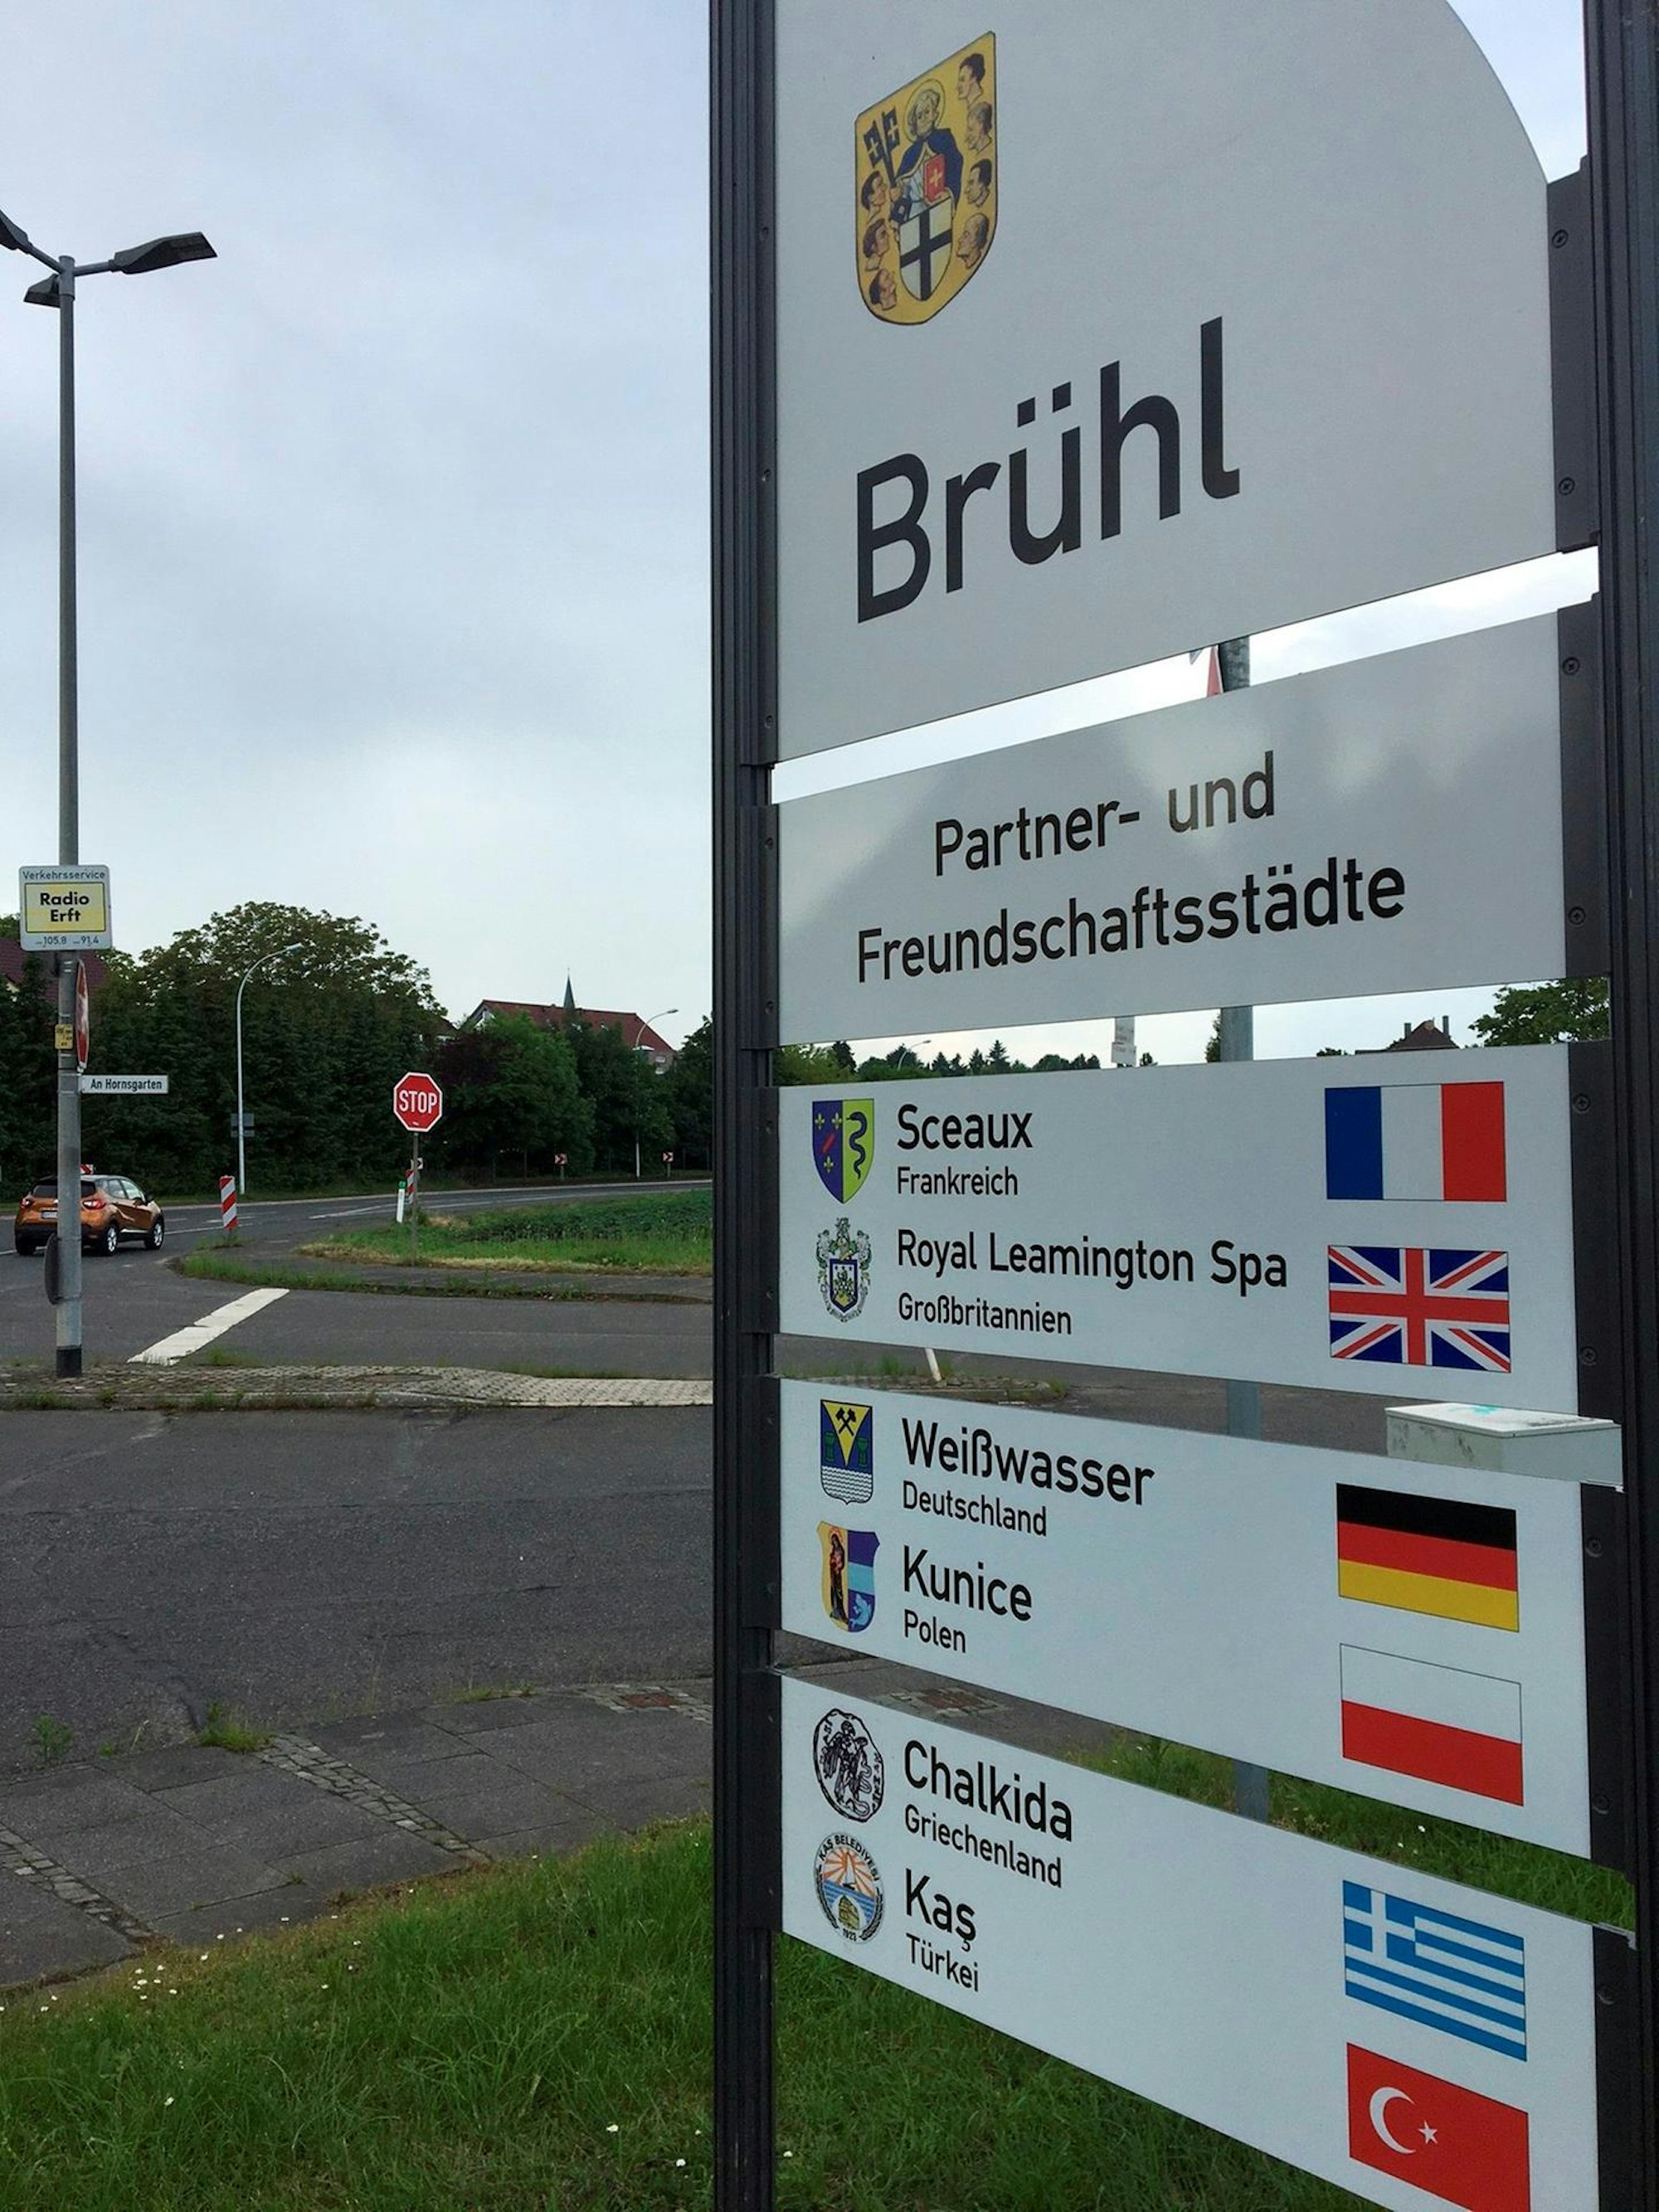 An sechs Straßen wurden neue Schilder aufgestellt, die auf die Brühler Partnerstädte hinweisen.